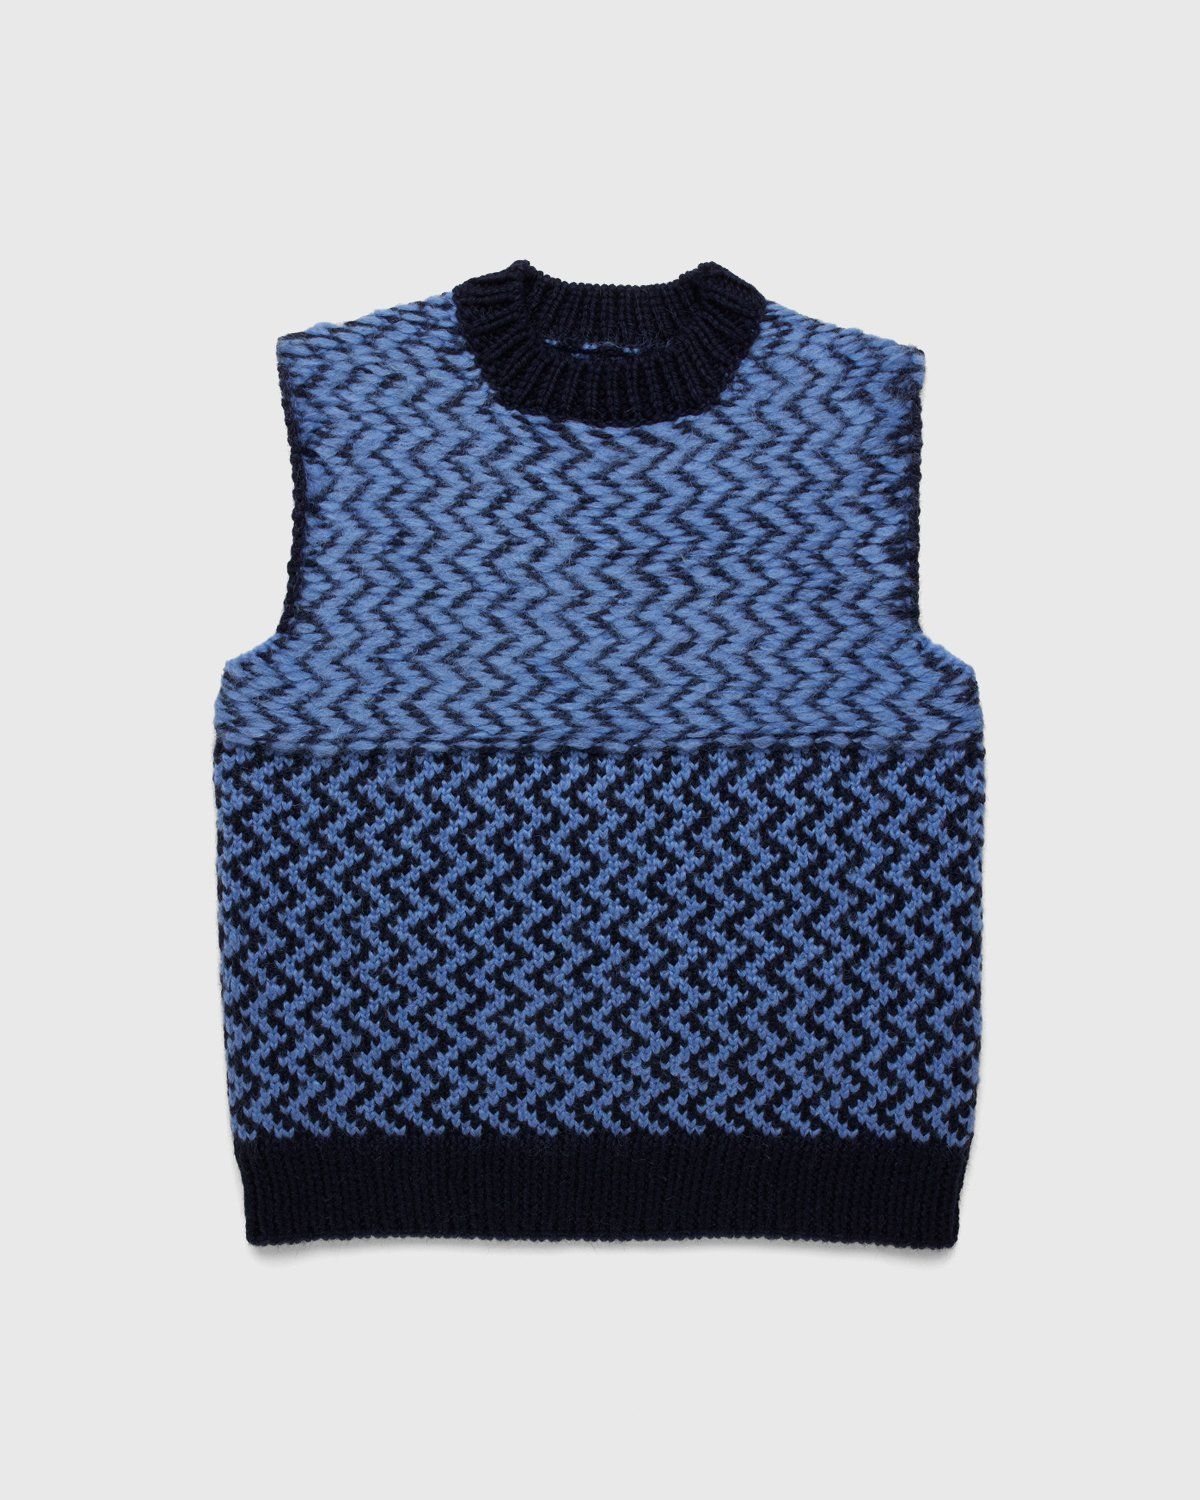 Jil Sander – Vest Knitted Blue - Image 1